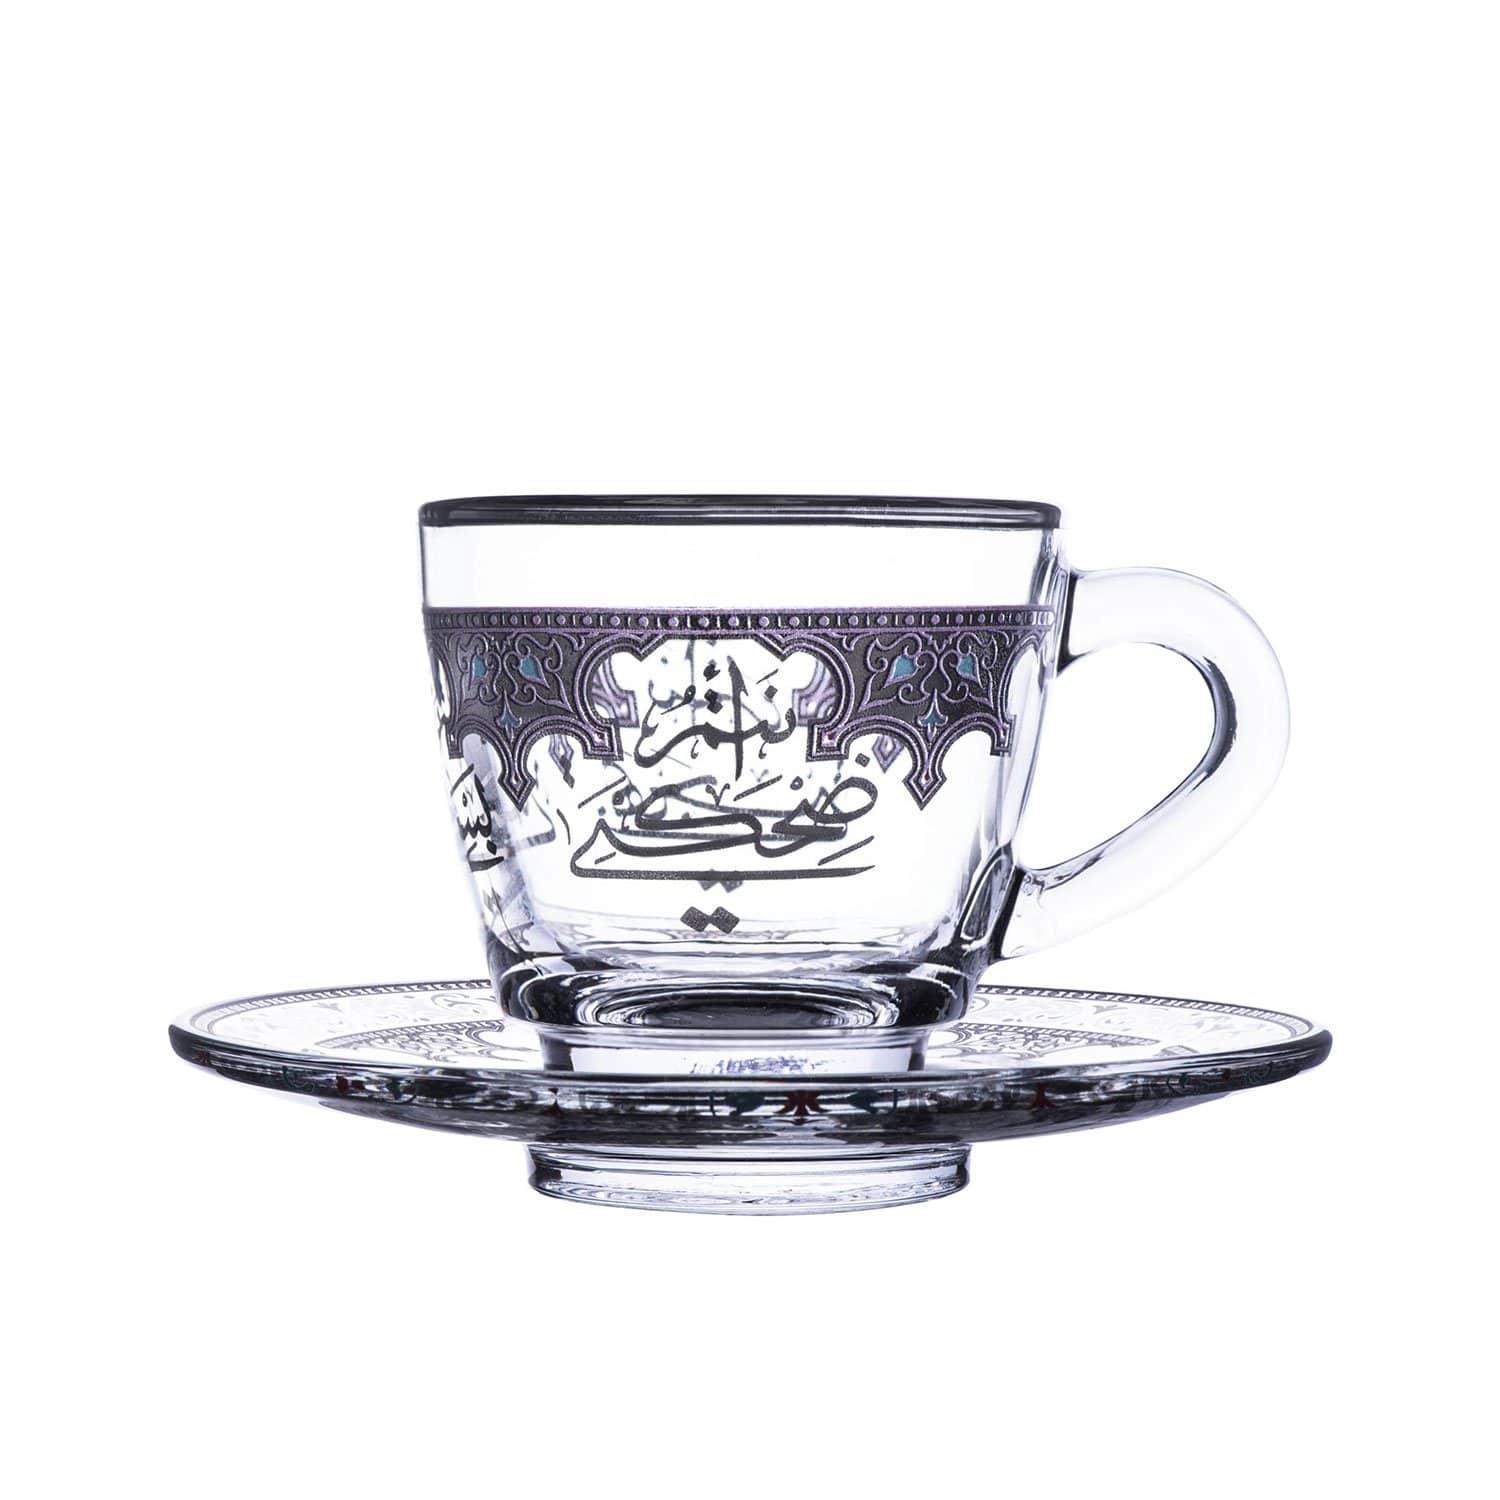 ديملاج سورور 12 قطعة فنجان قهوة وصحن بلاتينيوم - 46995